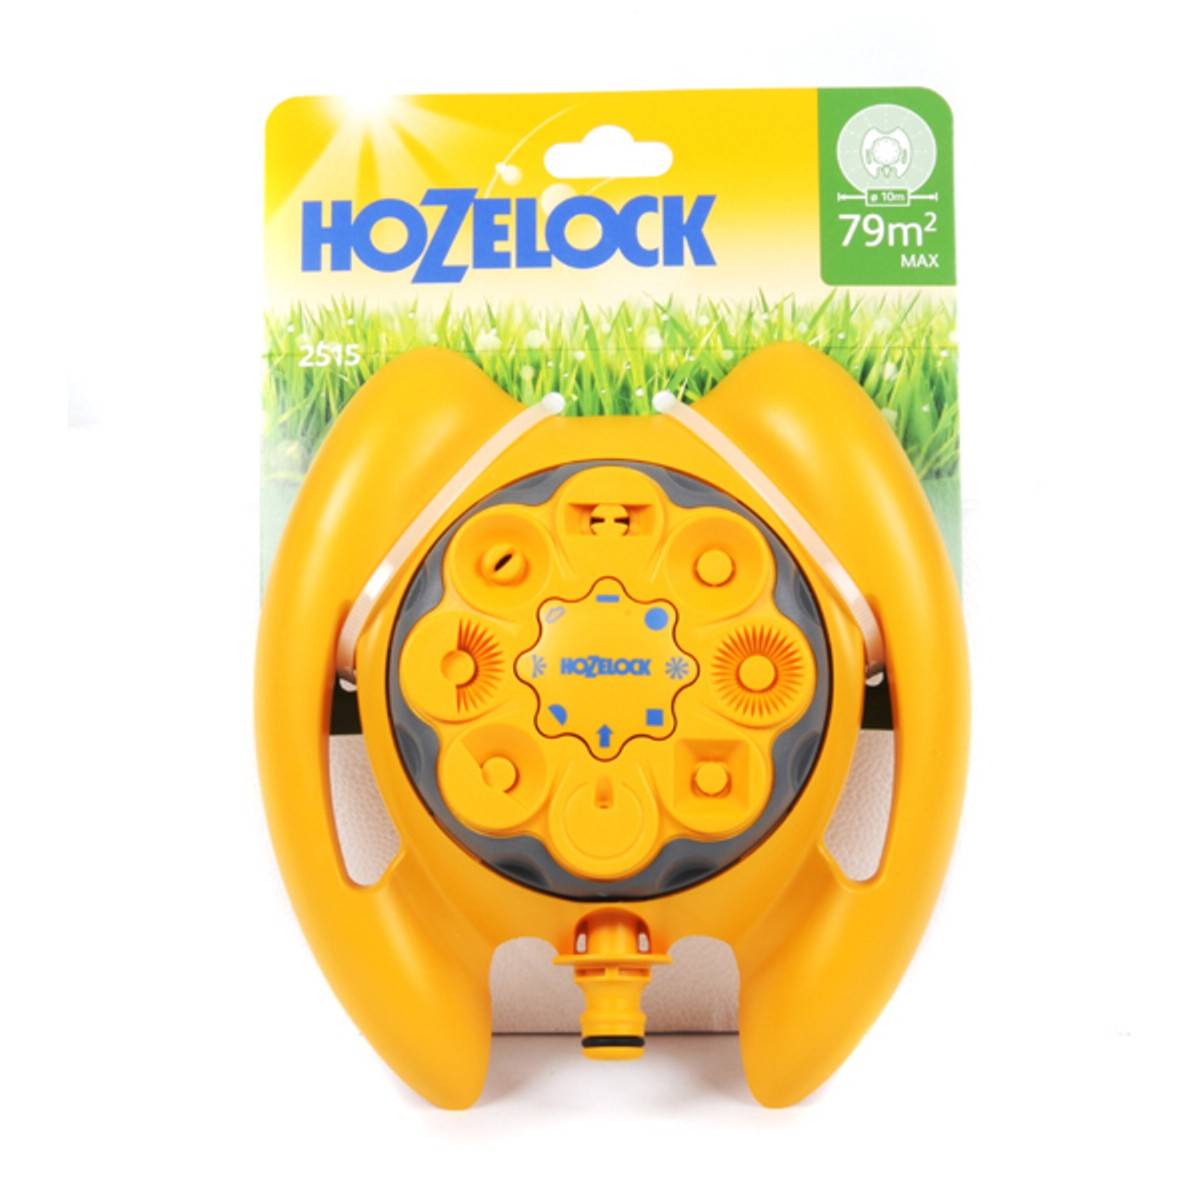 Hozelock Multi Sprinkler 79 Sq m (2515)